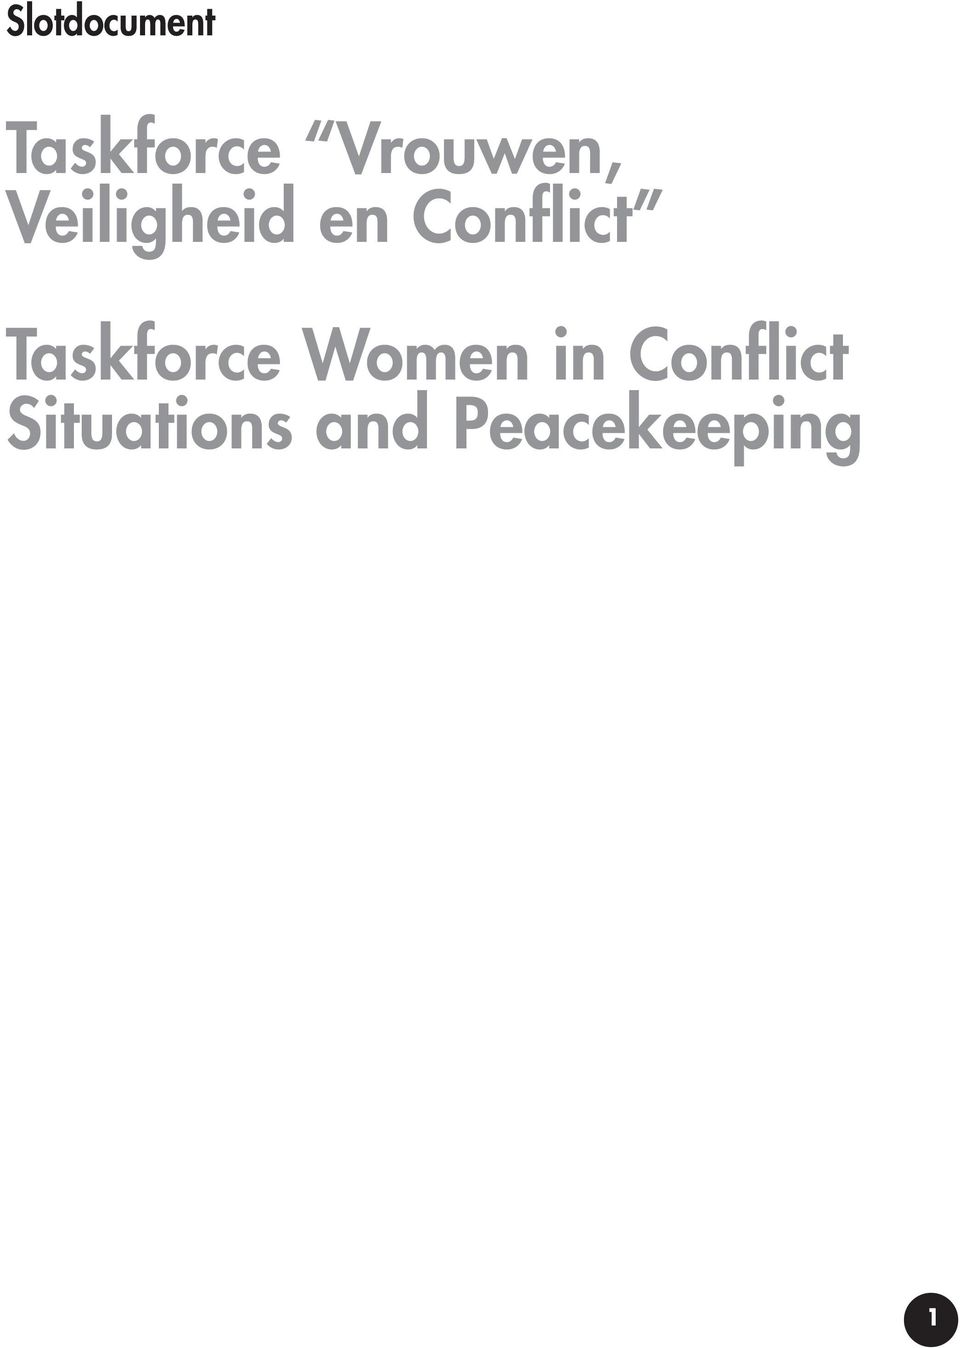 Conflict Taskforce Women in